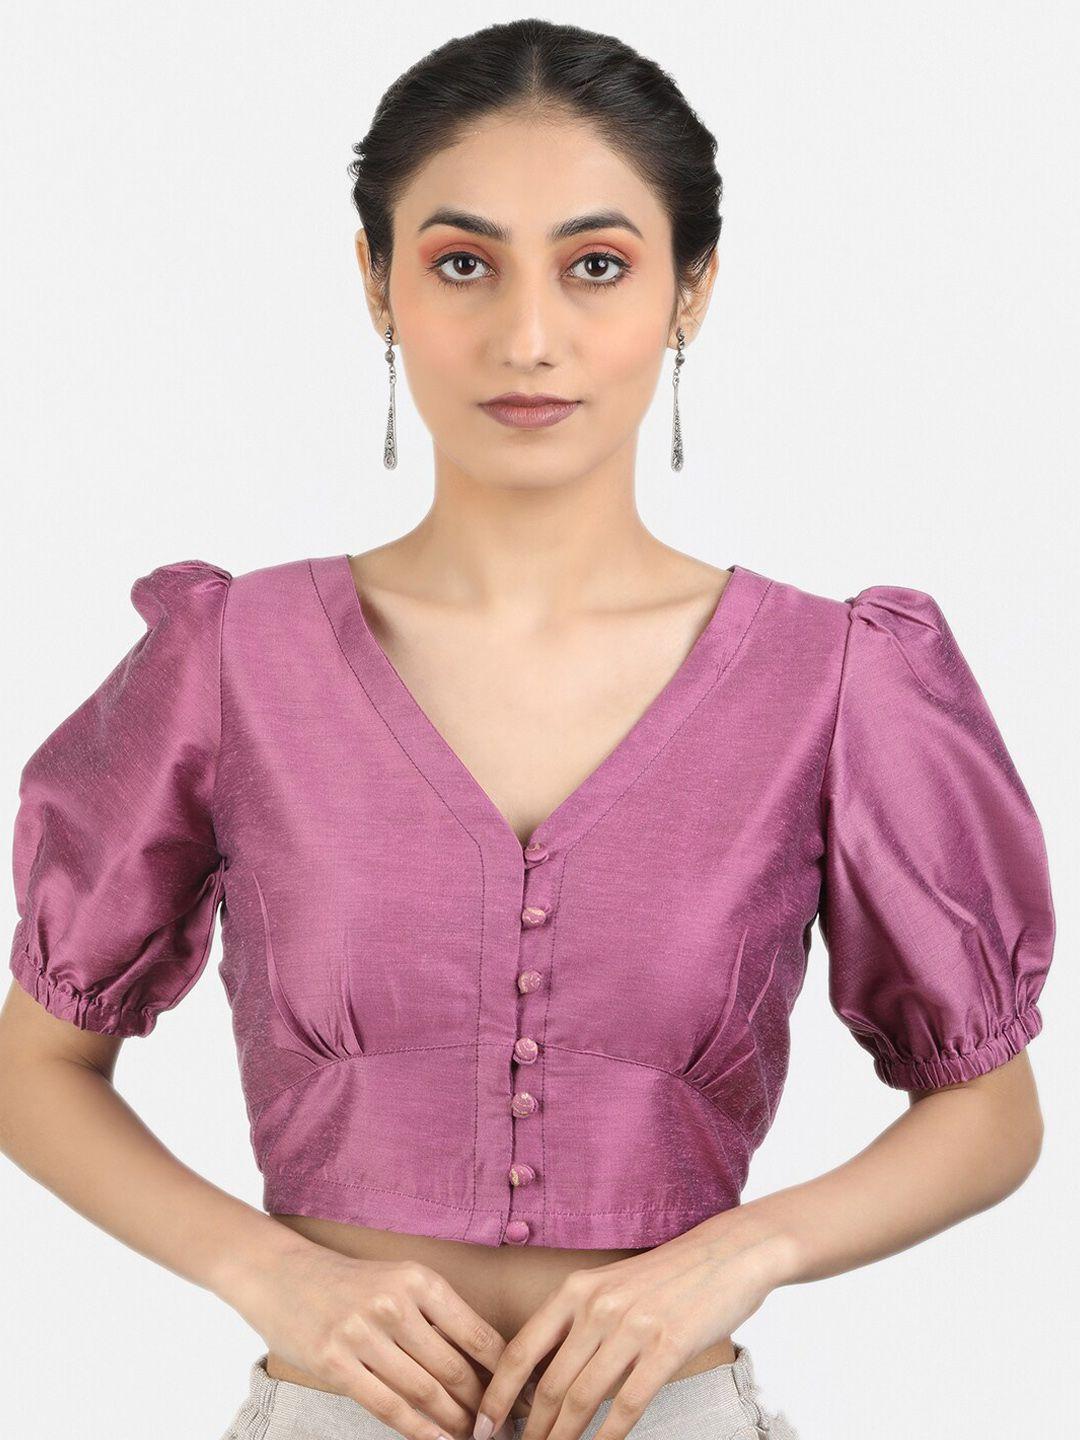 llajja puff sleeves saree blouse